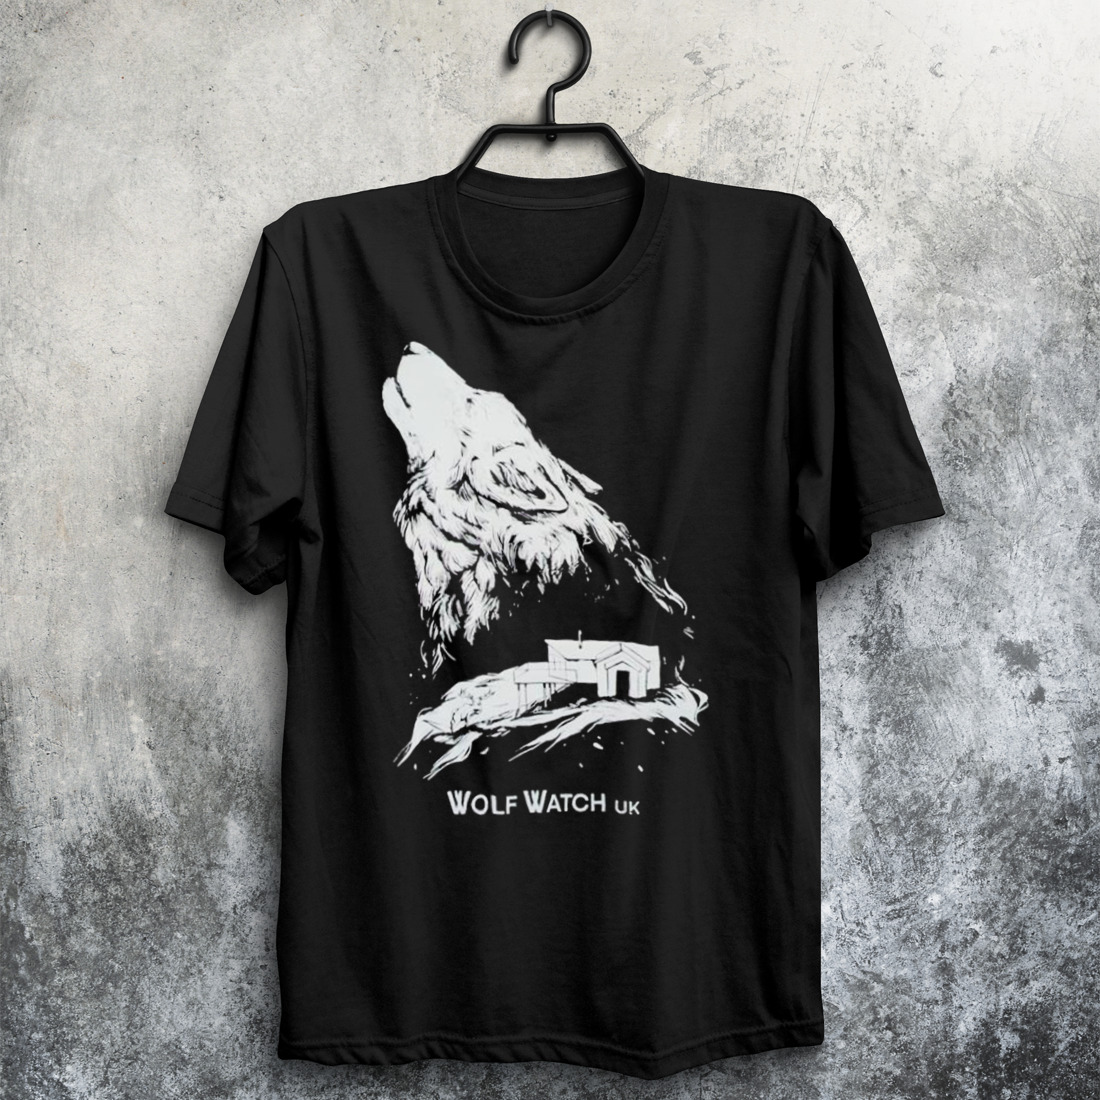 wolfwatch Merch Wolf Watch Uk T Shirt